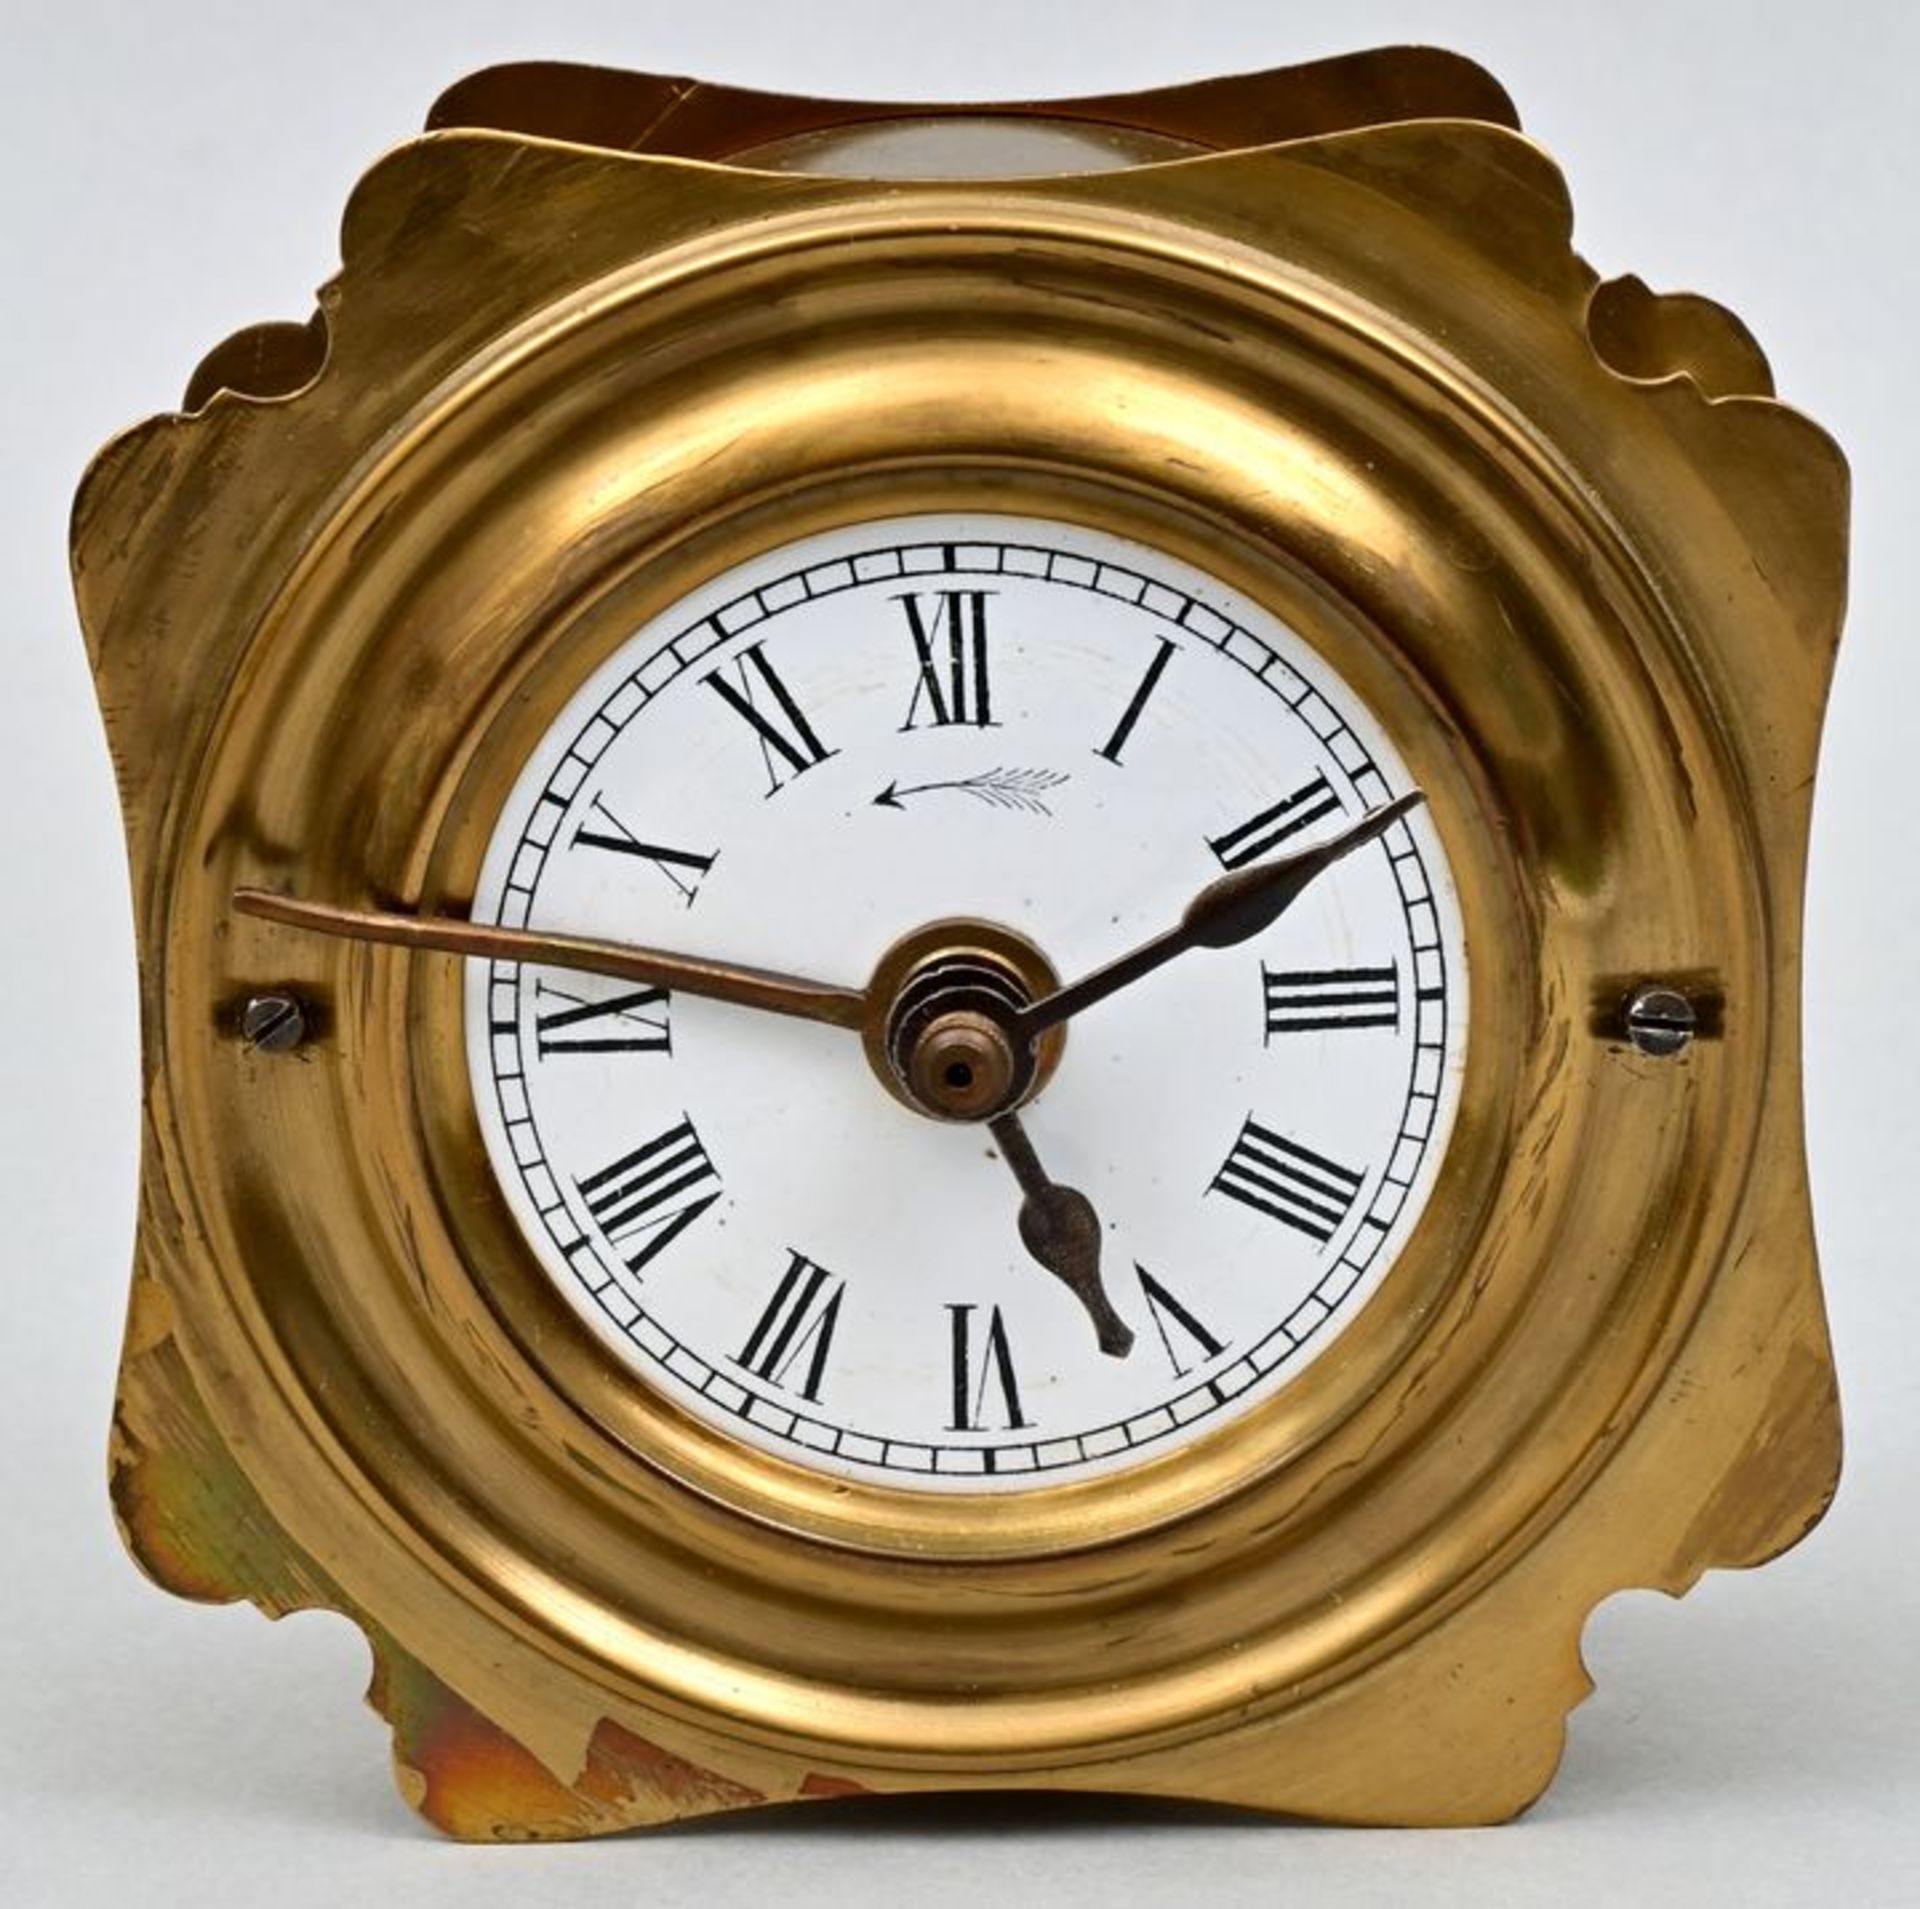 Pendelwecker Teubner / alarm clock